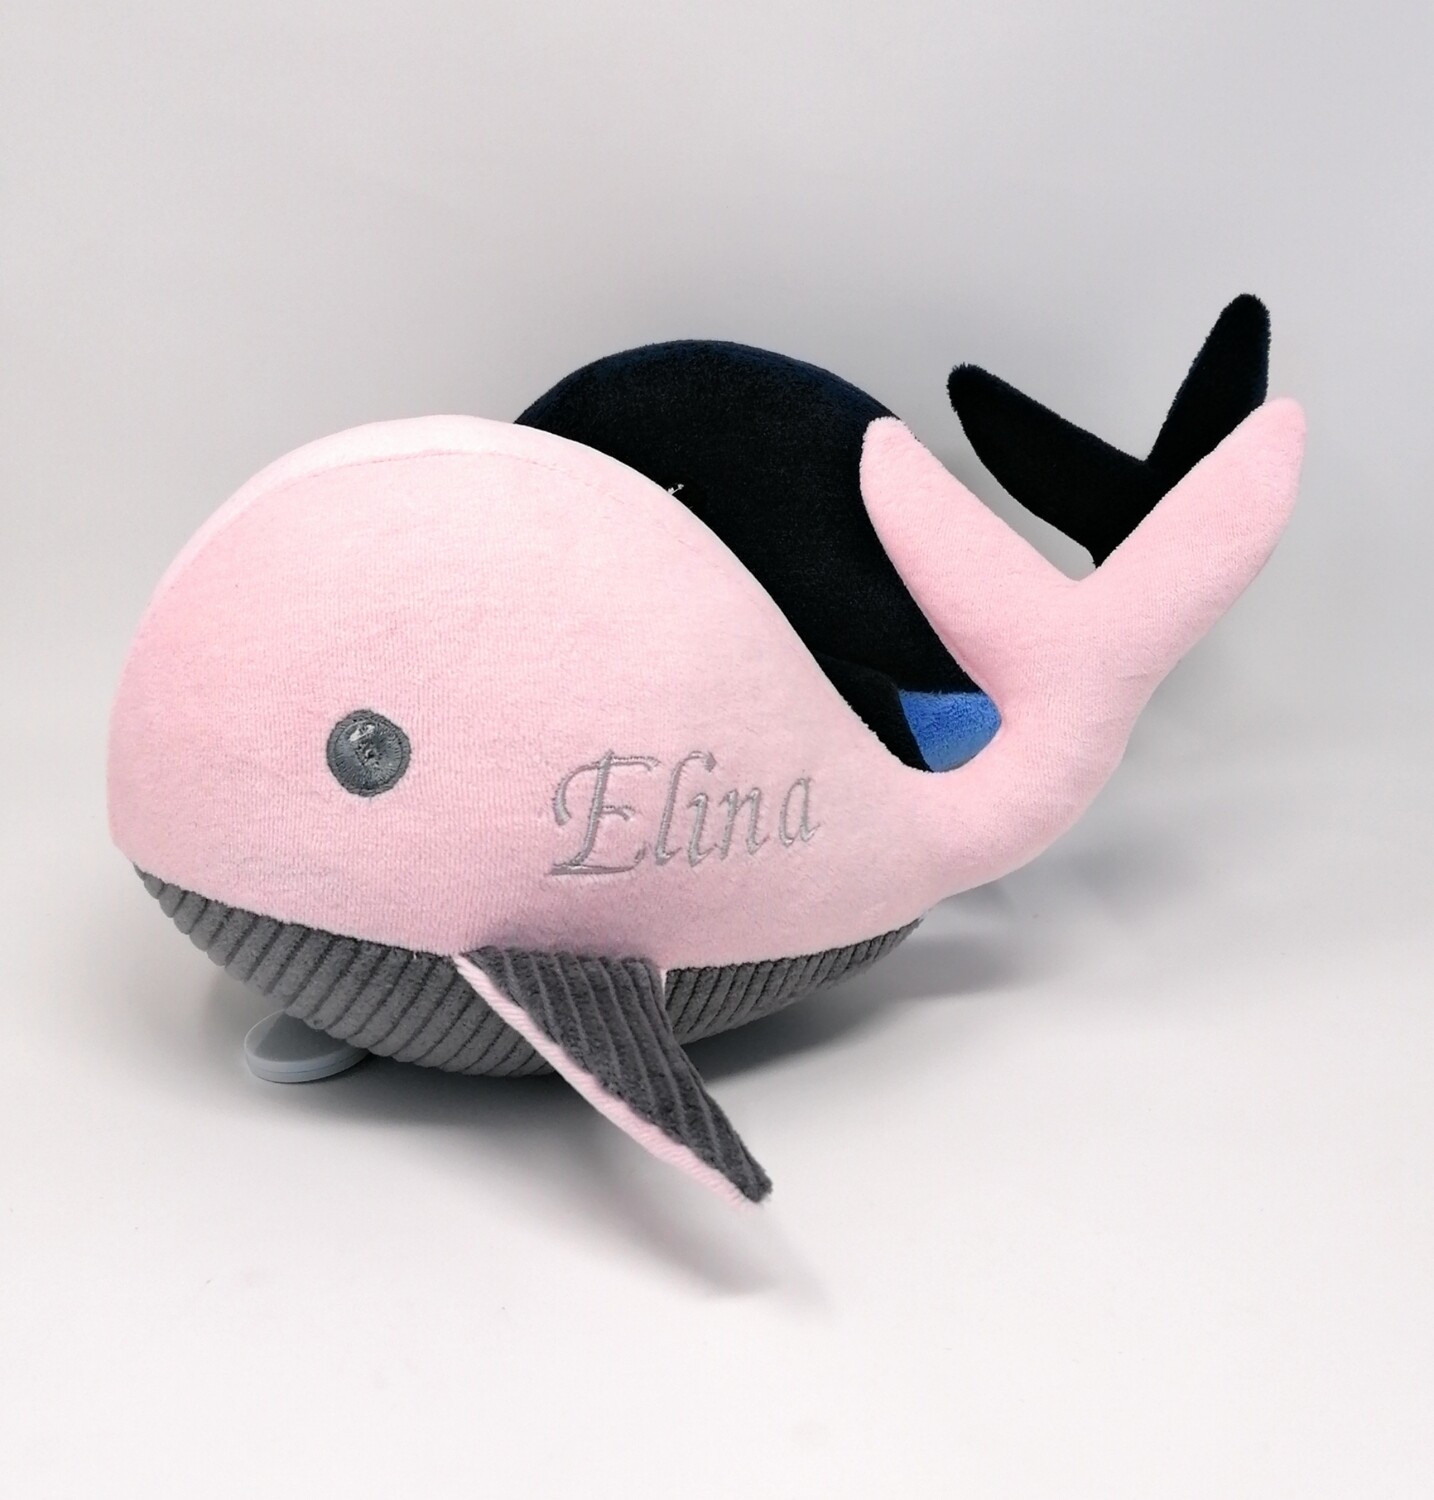 Kuscheltier Wal für Spieluhr helles rosa-grau: mit Namen und Wunschmelodie, aus Öko Teddy Plüsch, mit austauschbarer Spieluhr. Optional mit Geheimtasche/Reißverschluss